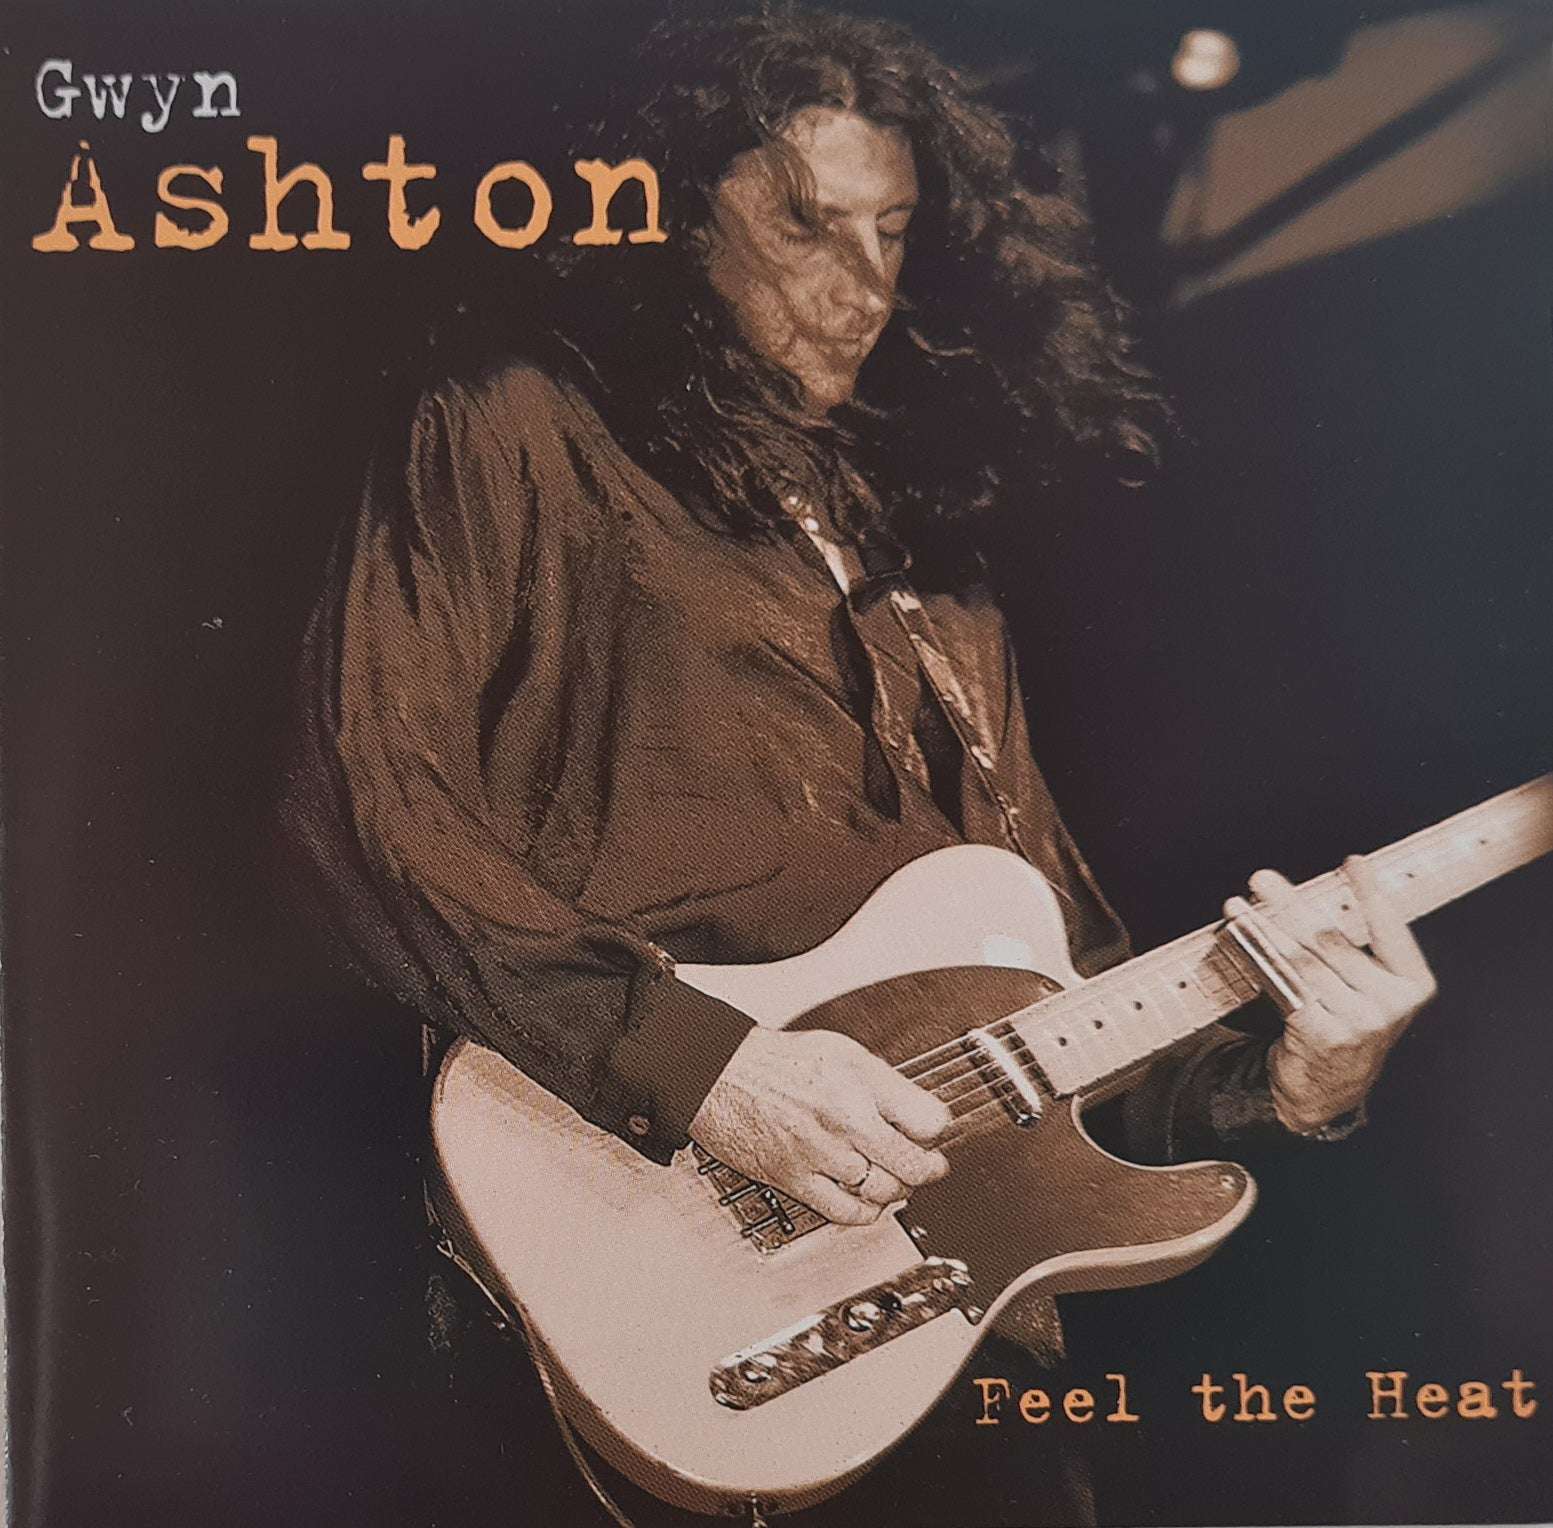 Gwyn Ashton - Feel the Heat (CD)